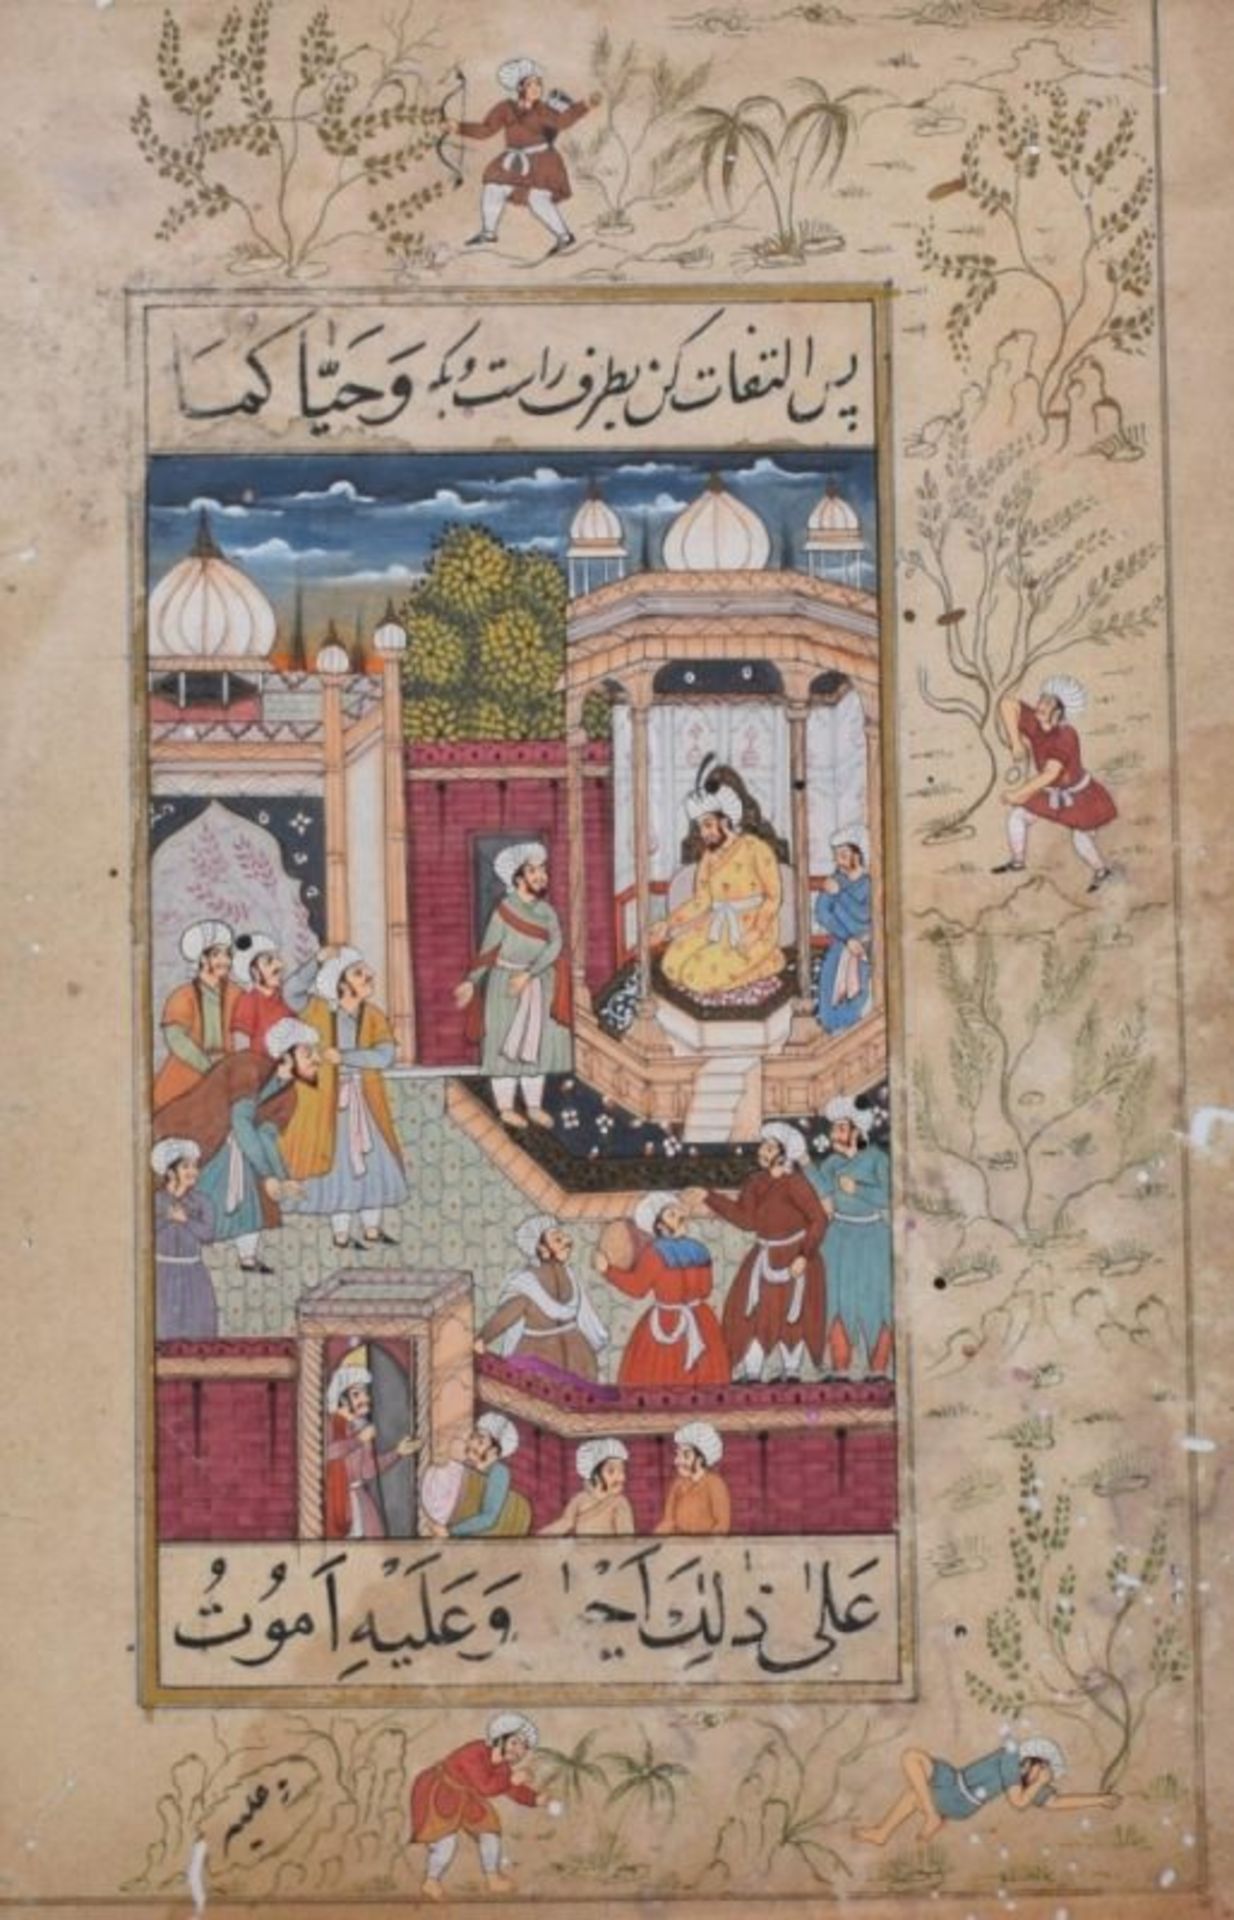 Ein Herrscher empfängt seine Untertanen im Palast, Indopersische Miniaturmalerei, wohl des 19. Jahrh